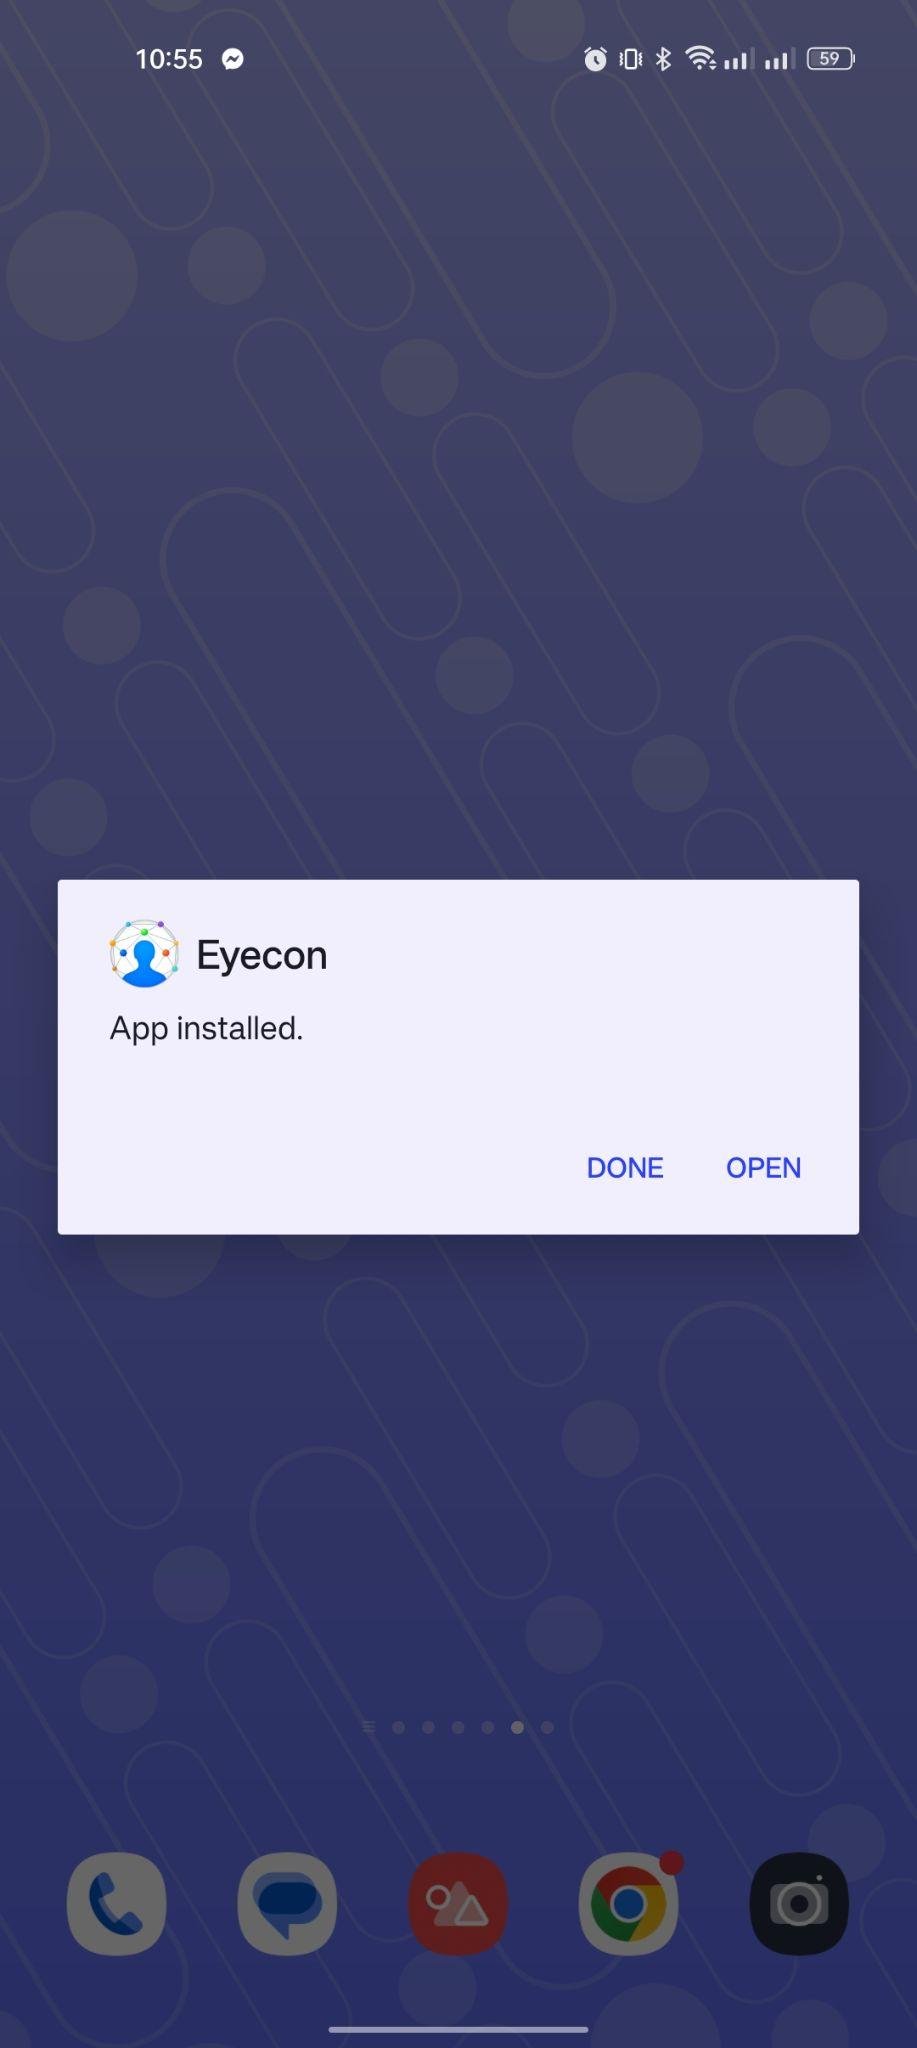 Eyecon apk installed